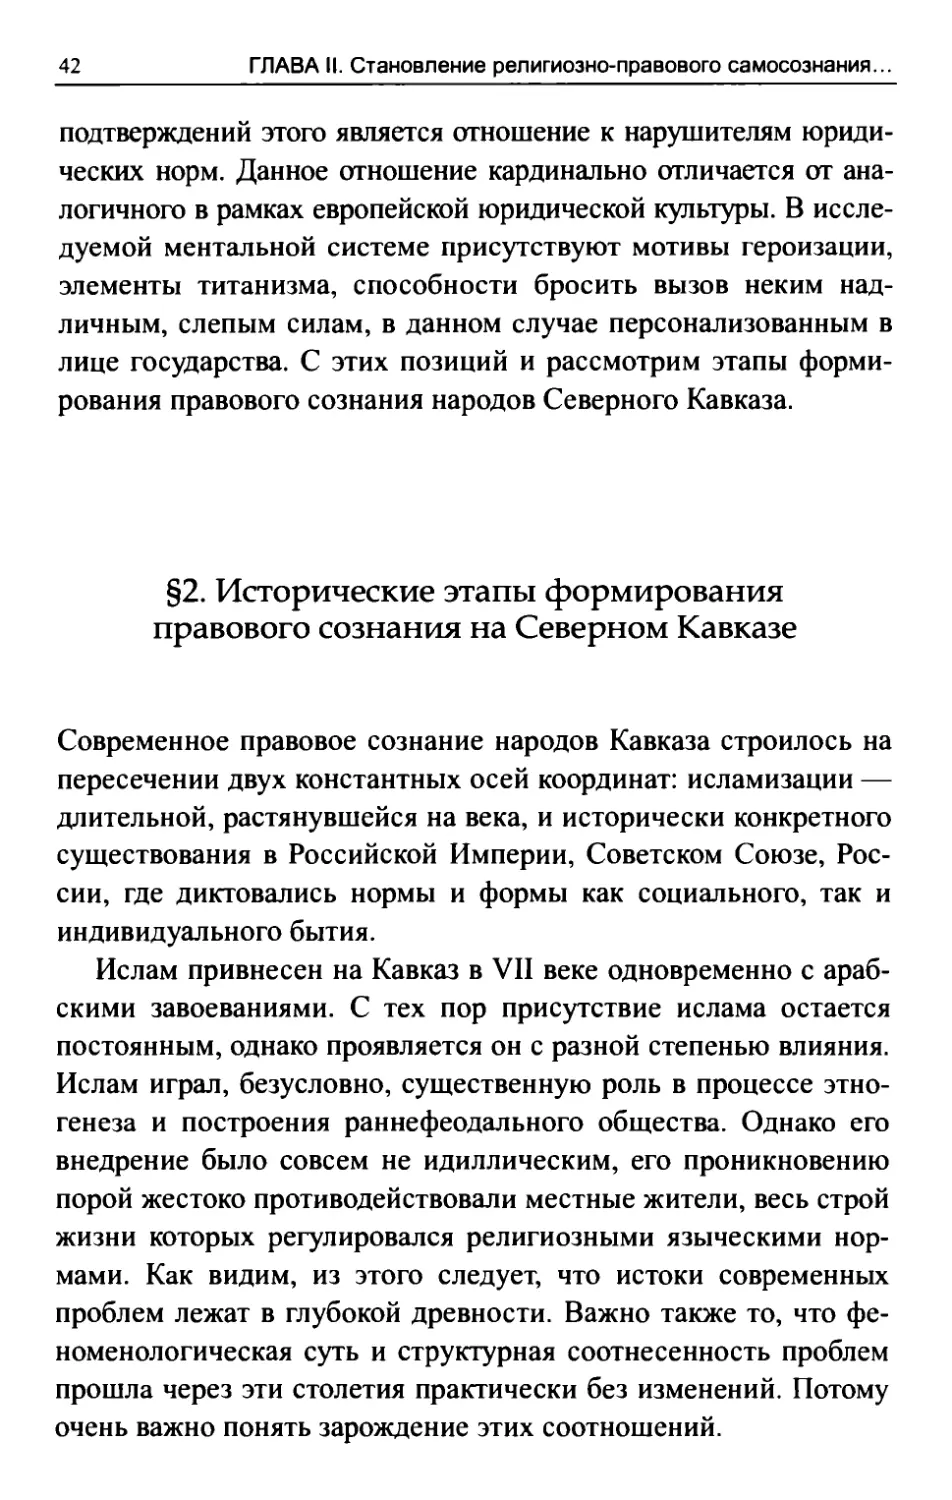 §2. Исторические этапы формирования правового сознания на Северном Кавказе